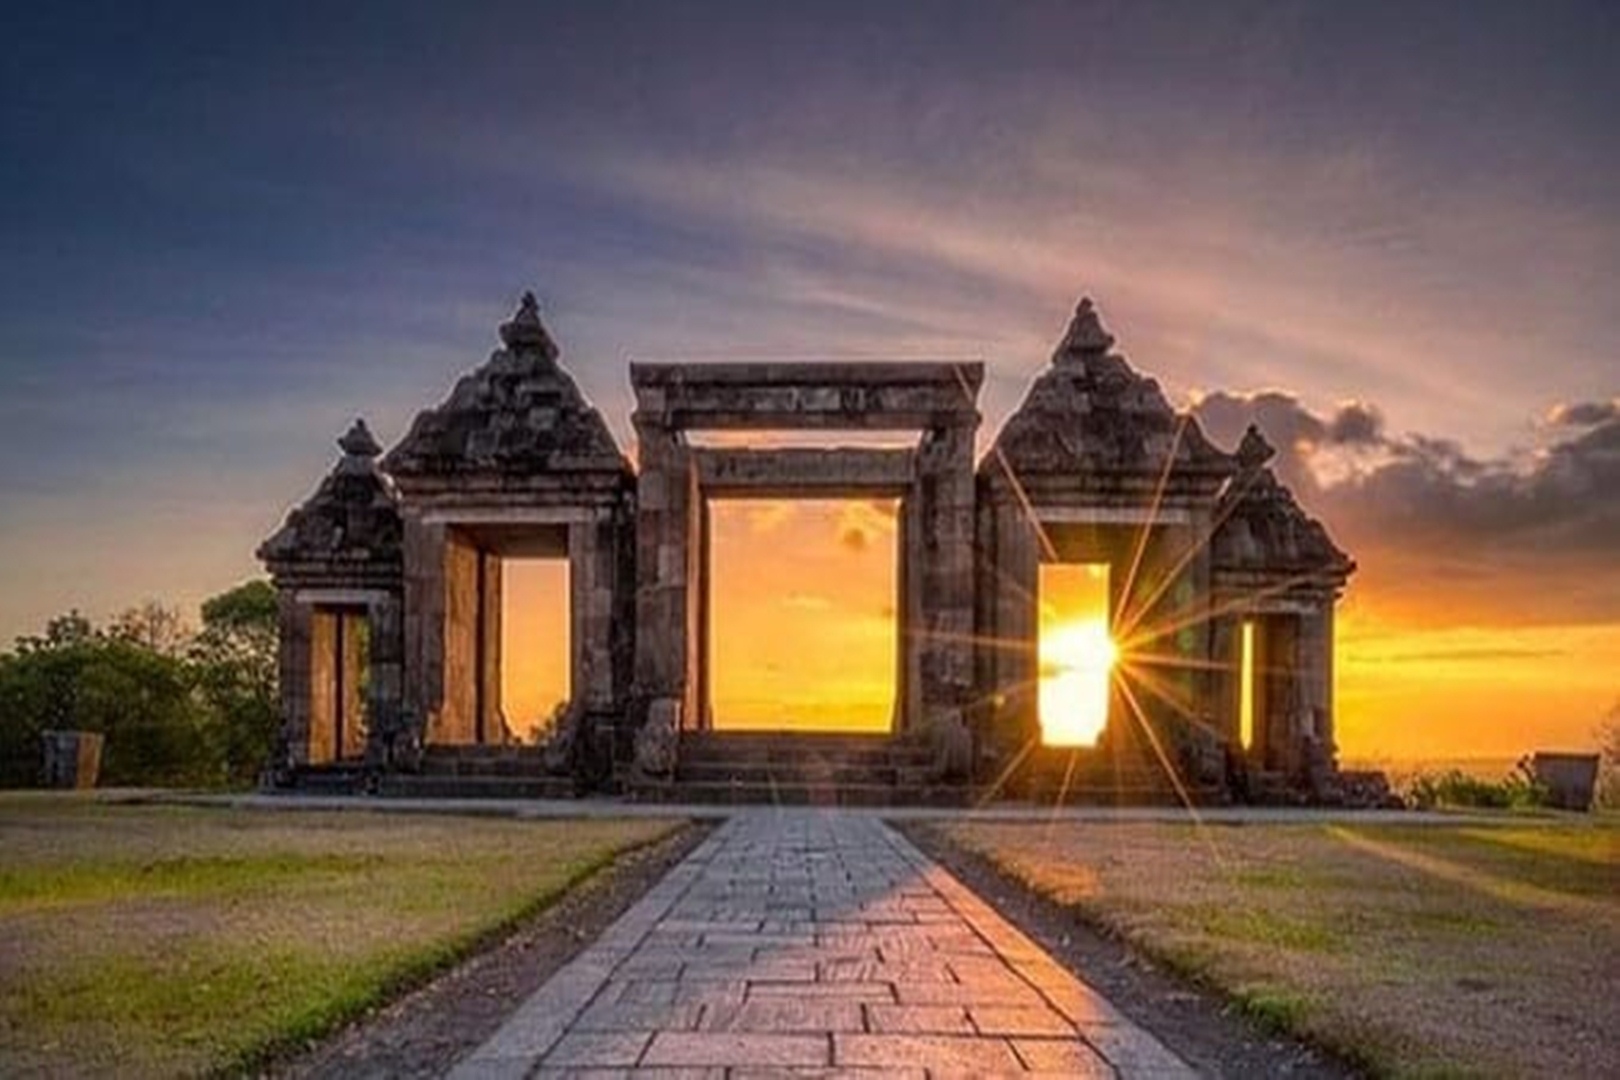 Nikmati Sunset di Ratu Boko, Destinasi Wisata yang Wajib Dikunjungi di Yogjakarta